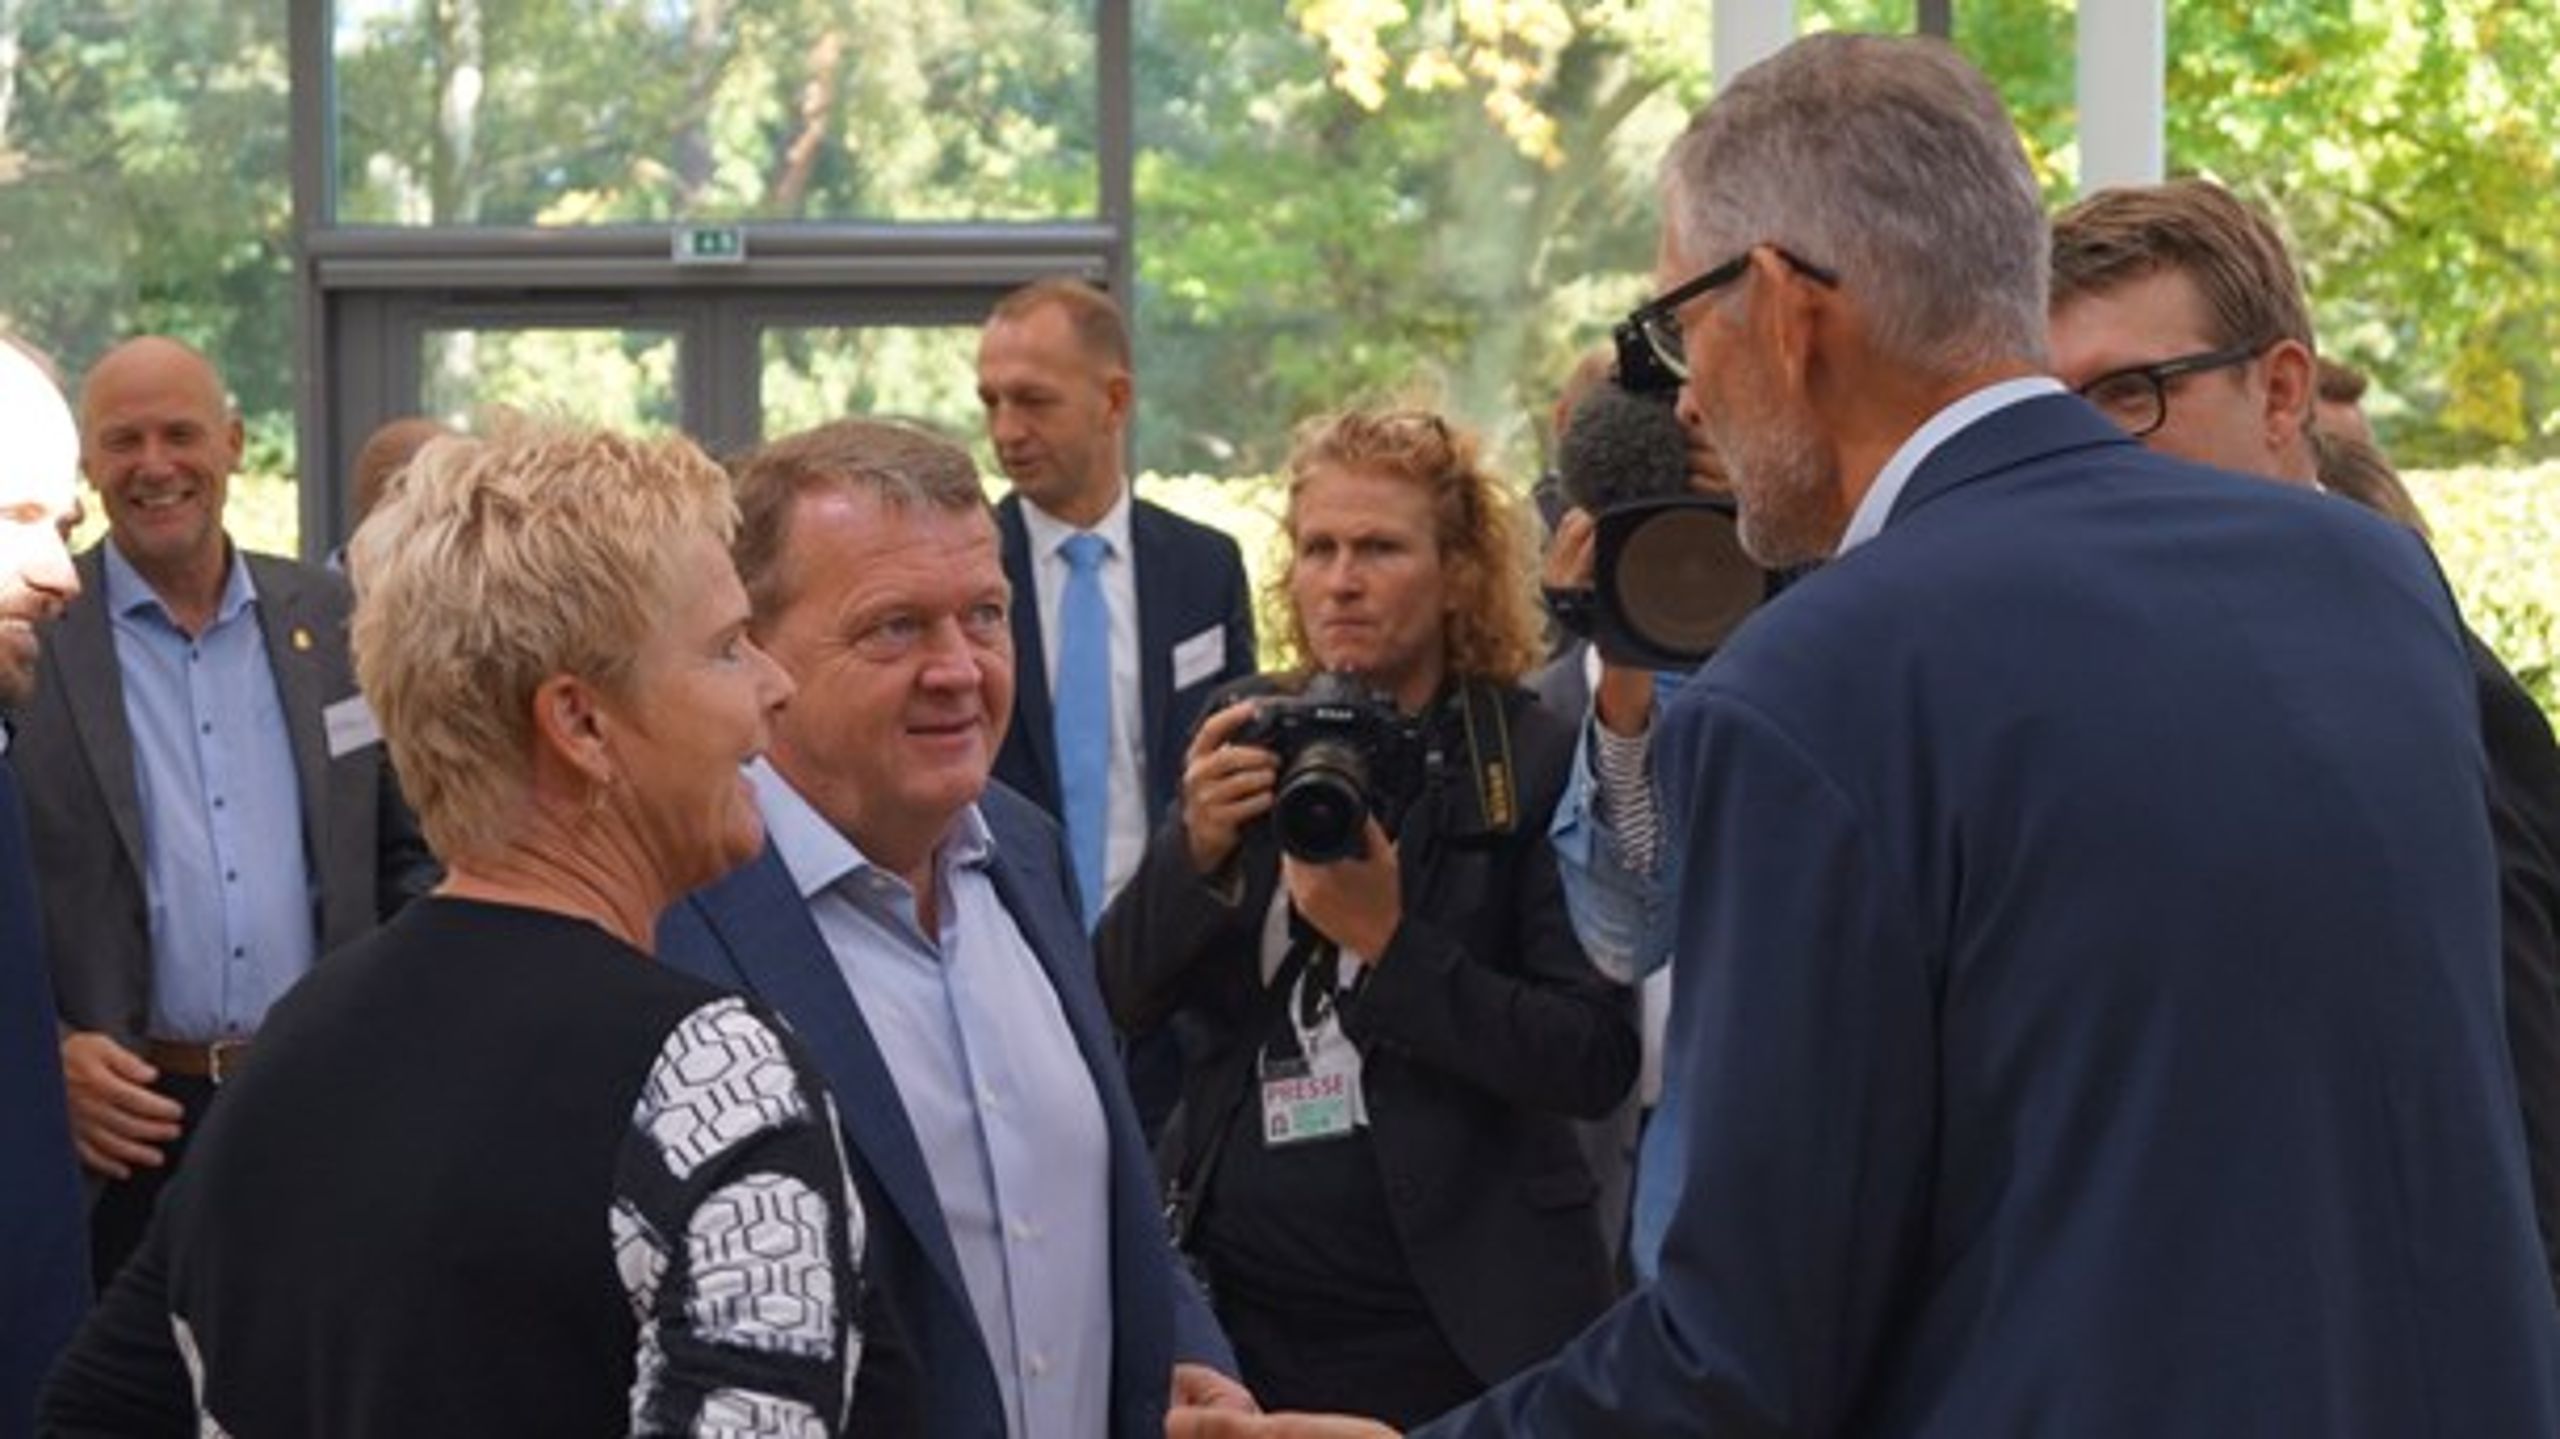 Statsministeren byder indenfor på Marienborg. Her ses han med Lizette Risgaard, LO (tv.) og Søren Møller, DGI (th.)